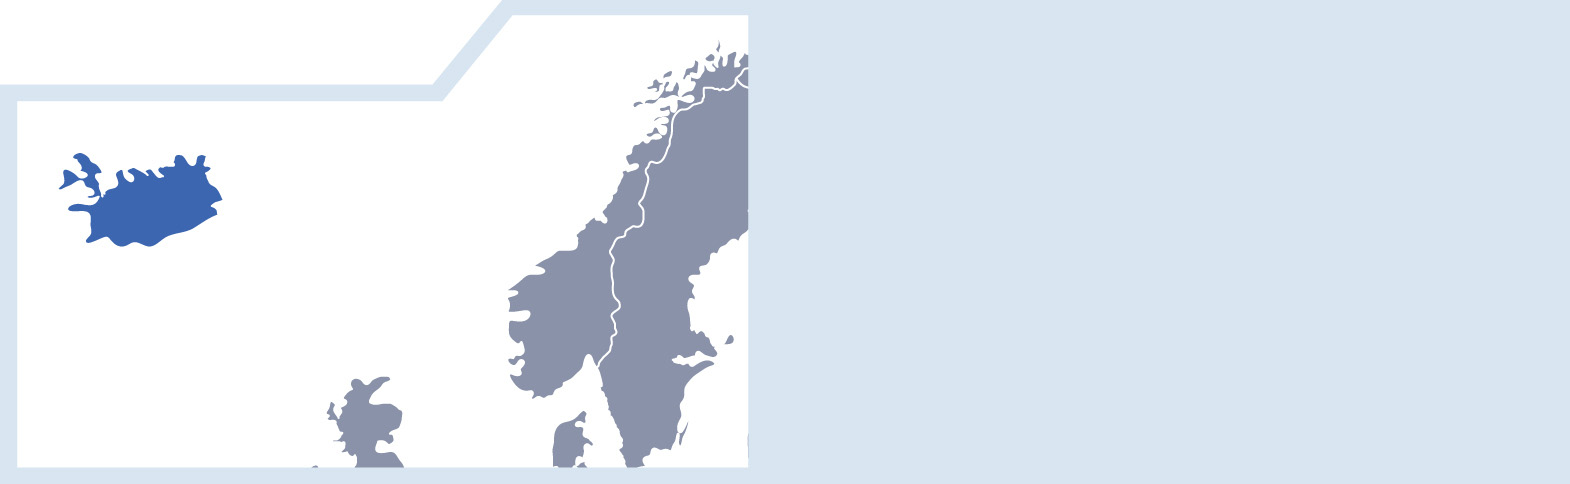 12. 아이슬란드 국가 개요 인구(1,000명) 328(2014) 면적(1,000km2) 100(2014) 1인당 GDP(US달러) 52,111(2014) 강 점 인구 만 명당 연구원 수 70.79 3위 GDP 대비 정부연구개발예산 1.06 2위 창업활동지수(TEA) 11.0 5위 인터넷 사용자 비중 96.